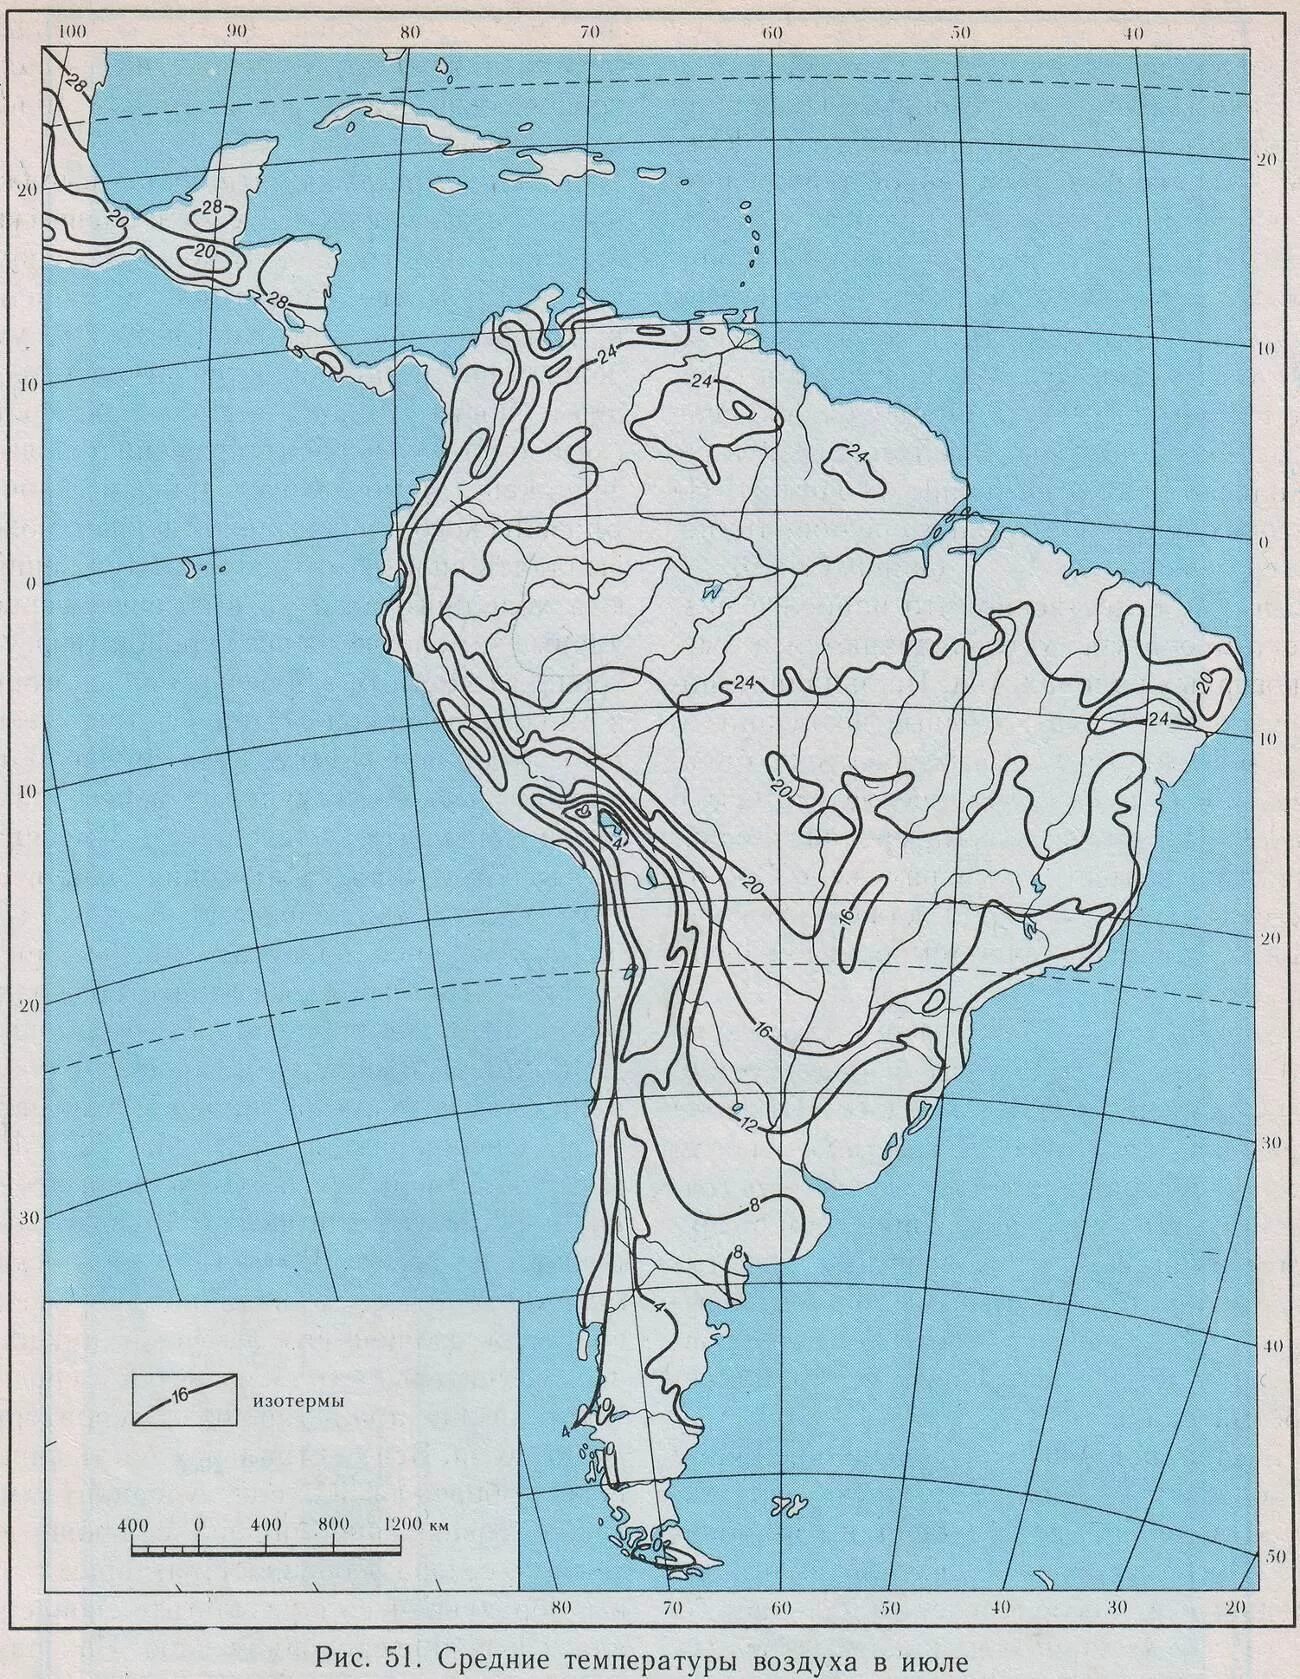 Контурная крата Южной Америки. Политическая контурная карта Южной Америки 7 класс география. Физическая контурная карта Южной Америки. Пустая физическая карта Южной Америки. Подпишите на контурной карте южной америки названия